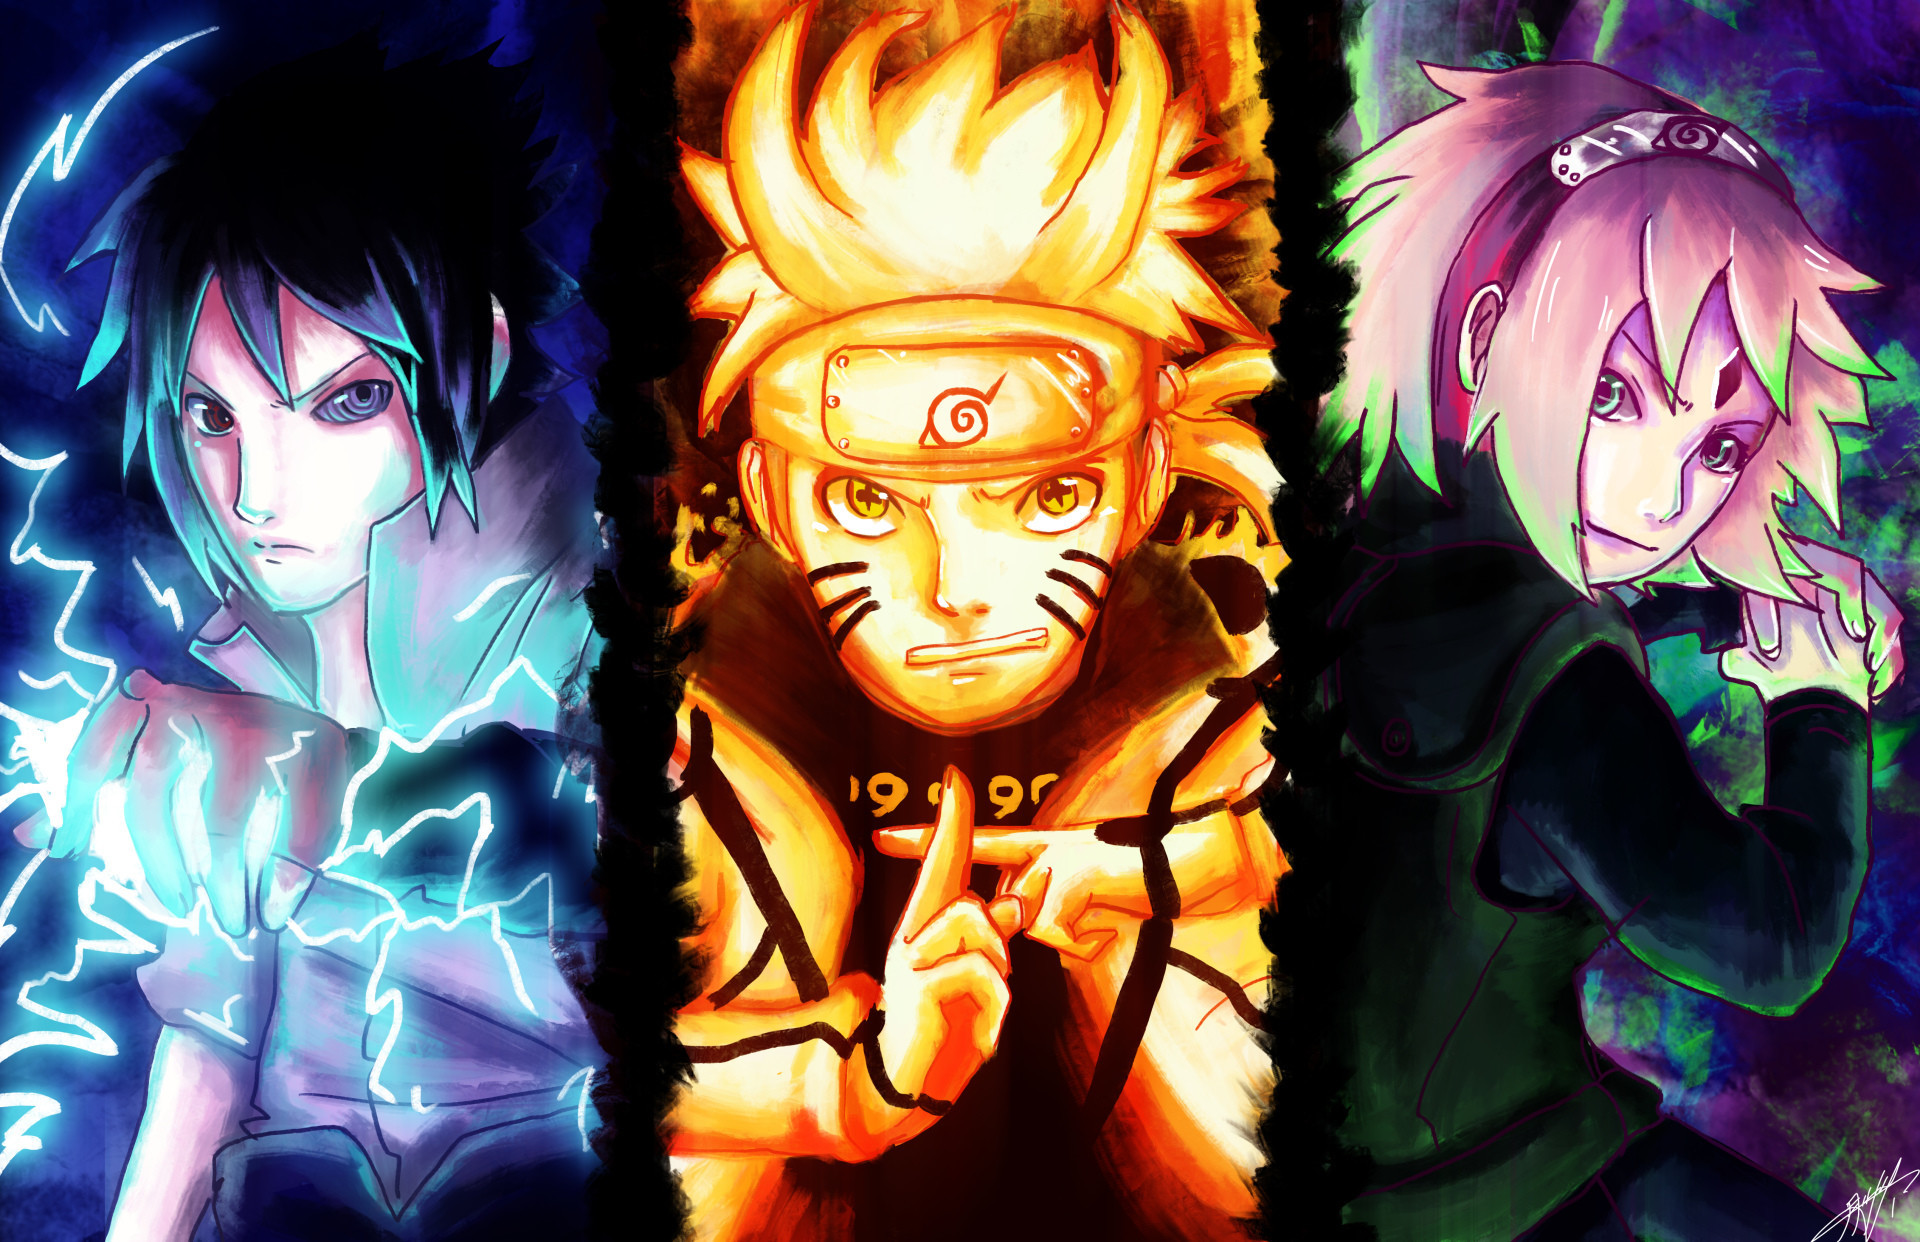 Với những ai yêu thích Naruto, hãy cùng đến với bộ sưu tập các hình nền Naruto đẹp mắt. Với những hình ảnh tuyệt đỉnh về nhân vật yêu thích của bạn, không gian làm việc hay chiếc điện thoại của bạn sẽ trở nên nổi bật hơn khi bắt đầu ngâm mình trong thế giới Naruto.